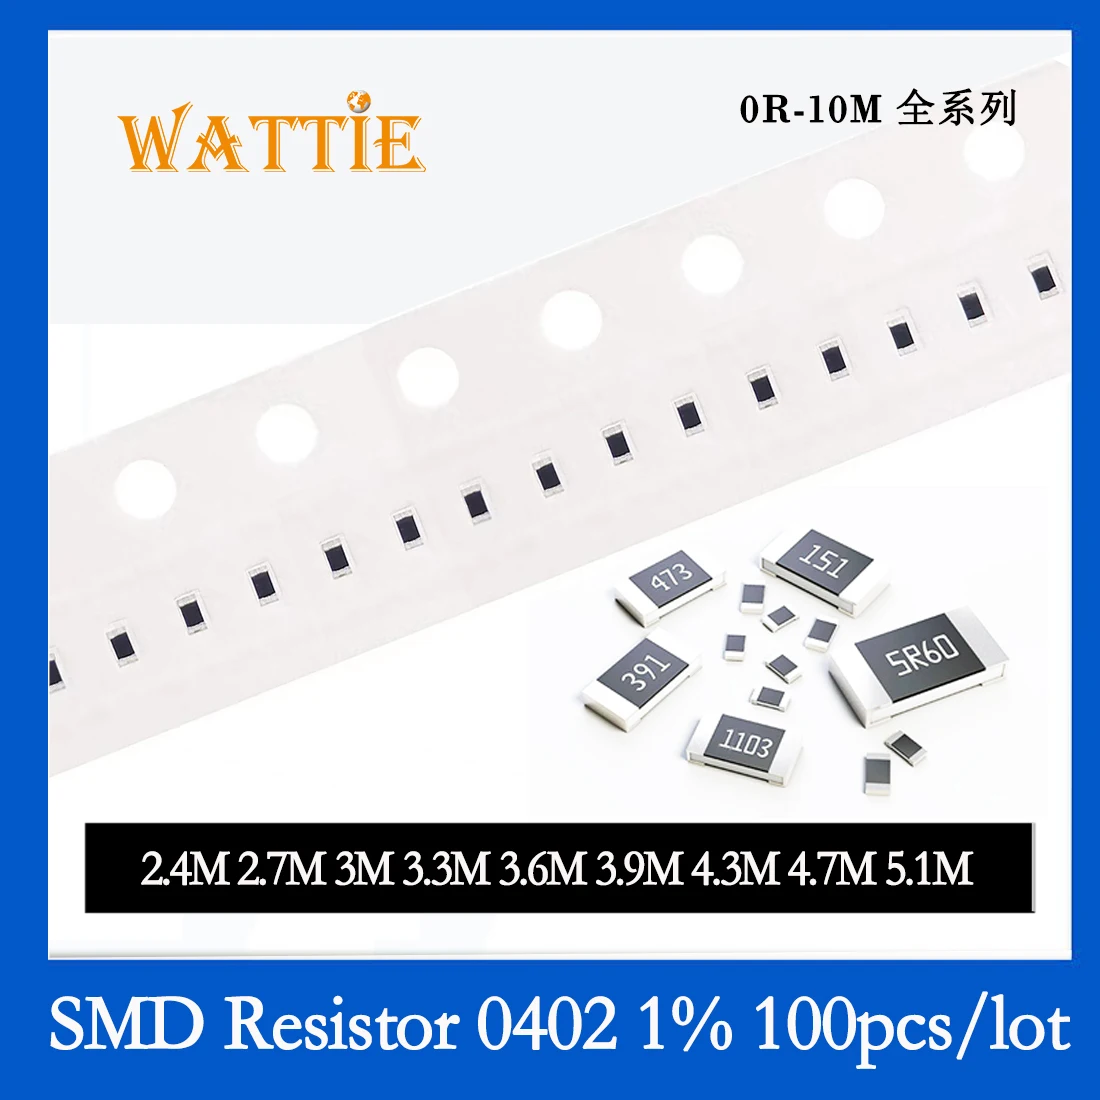 

SMD Resistor 0402 1% 2.4M 2.7M 3M 3.3M 3.6M 3.9M 4.3M 4.7M 5.1M 100PCS/lot chip resistors 1/16W 1.0mm*0.5mm